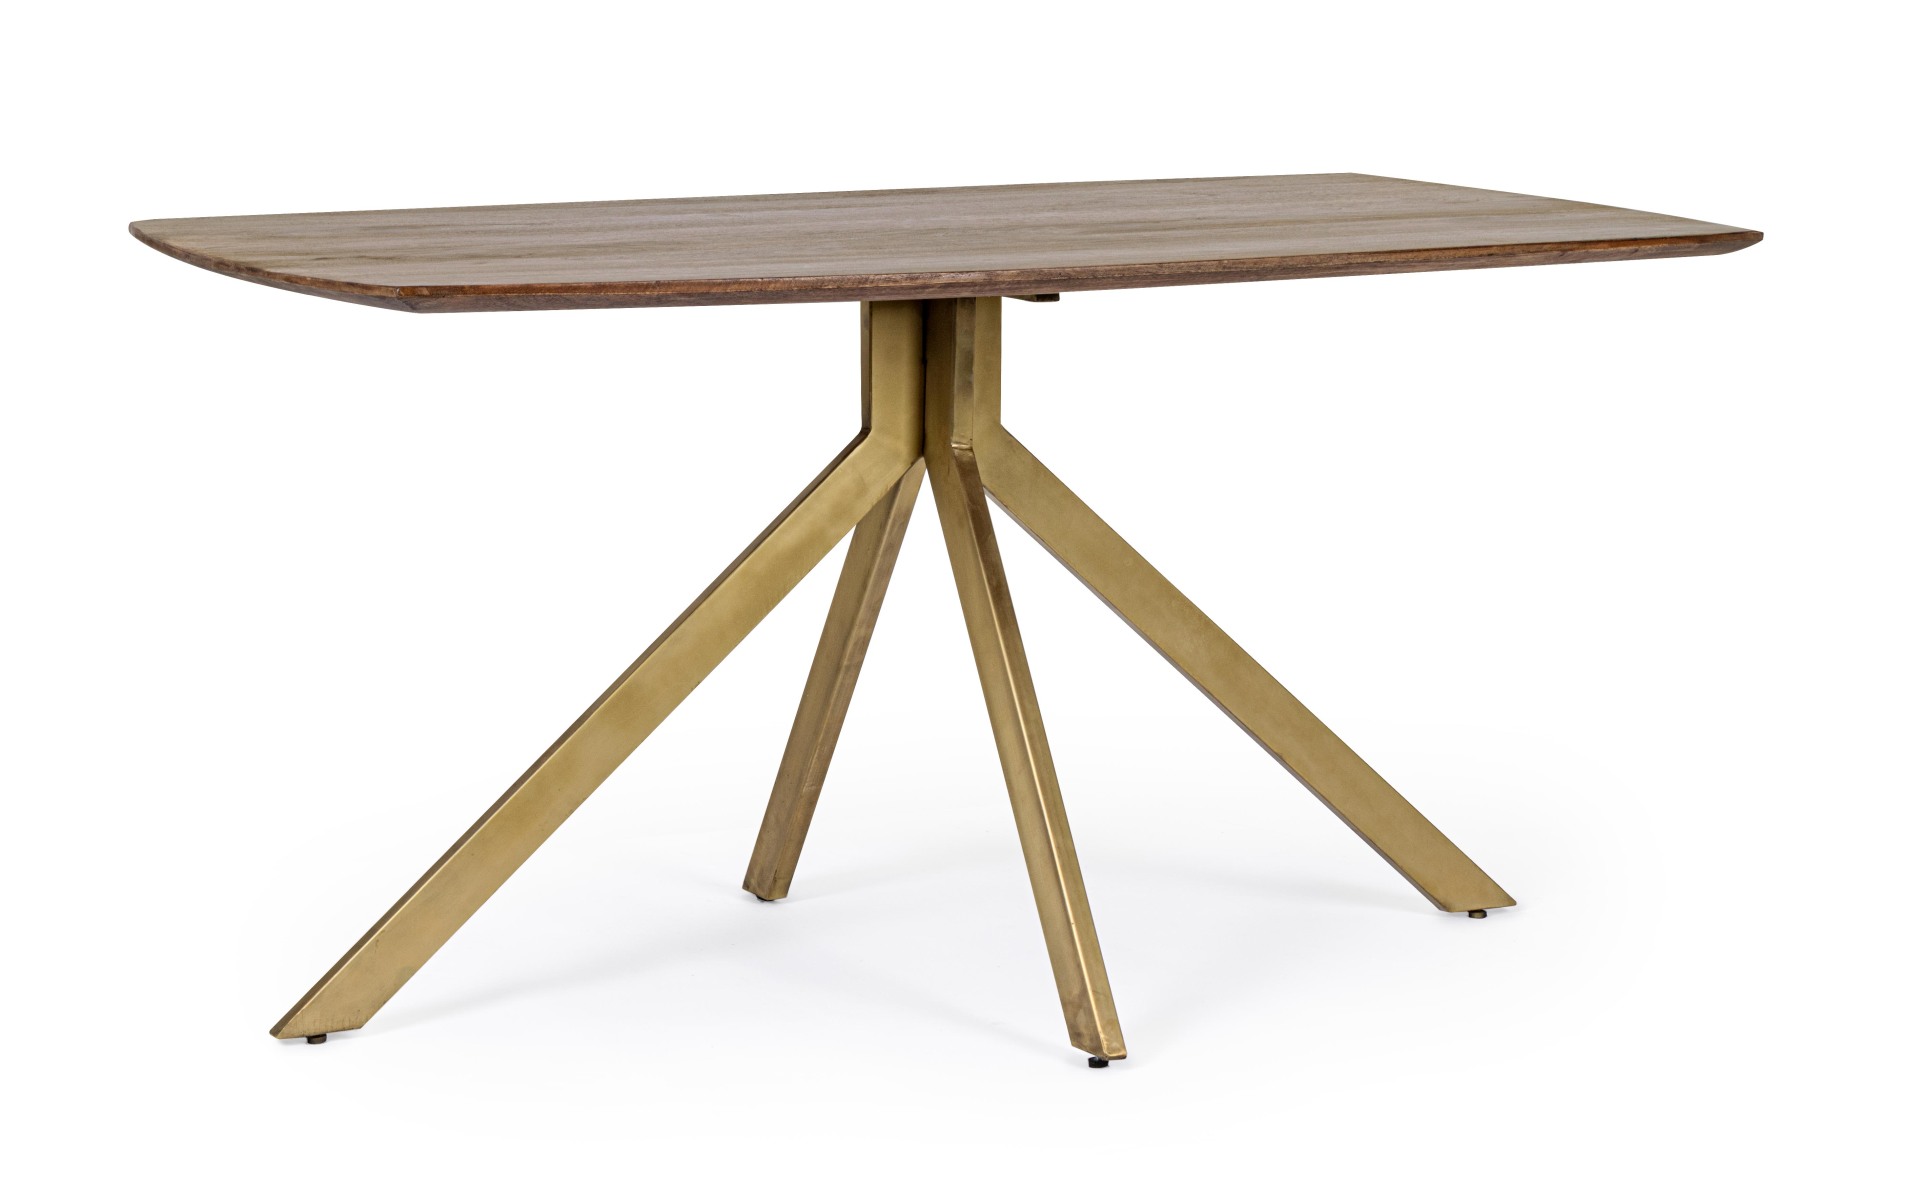 Der Esstisch Sherman überzeugt mit seinem klassischem Design. Gefertigt wurde er aus Mangoholz, welches einen natürlichen Farbton besitzt. Das Gestell ist aus Metall und hat eine goldene Farbe. Das Tisch hat eine Breite von 150 cm.